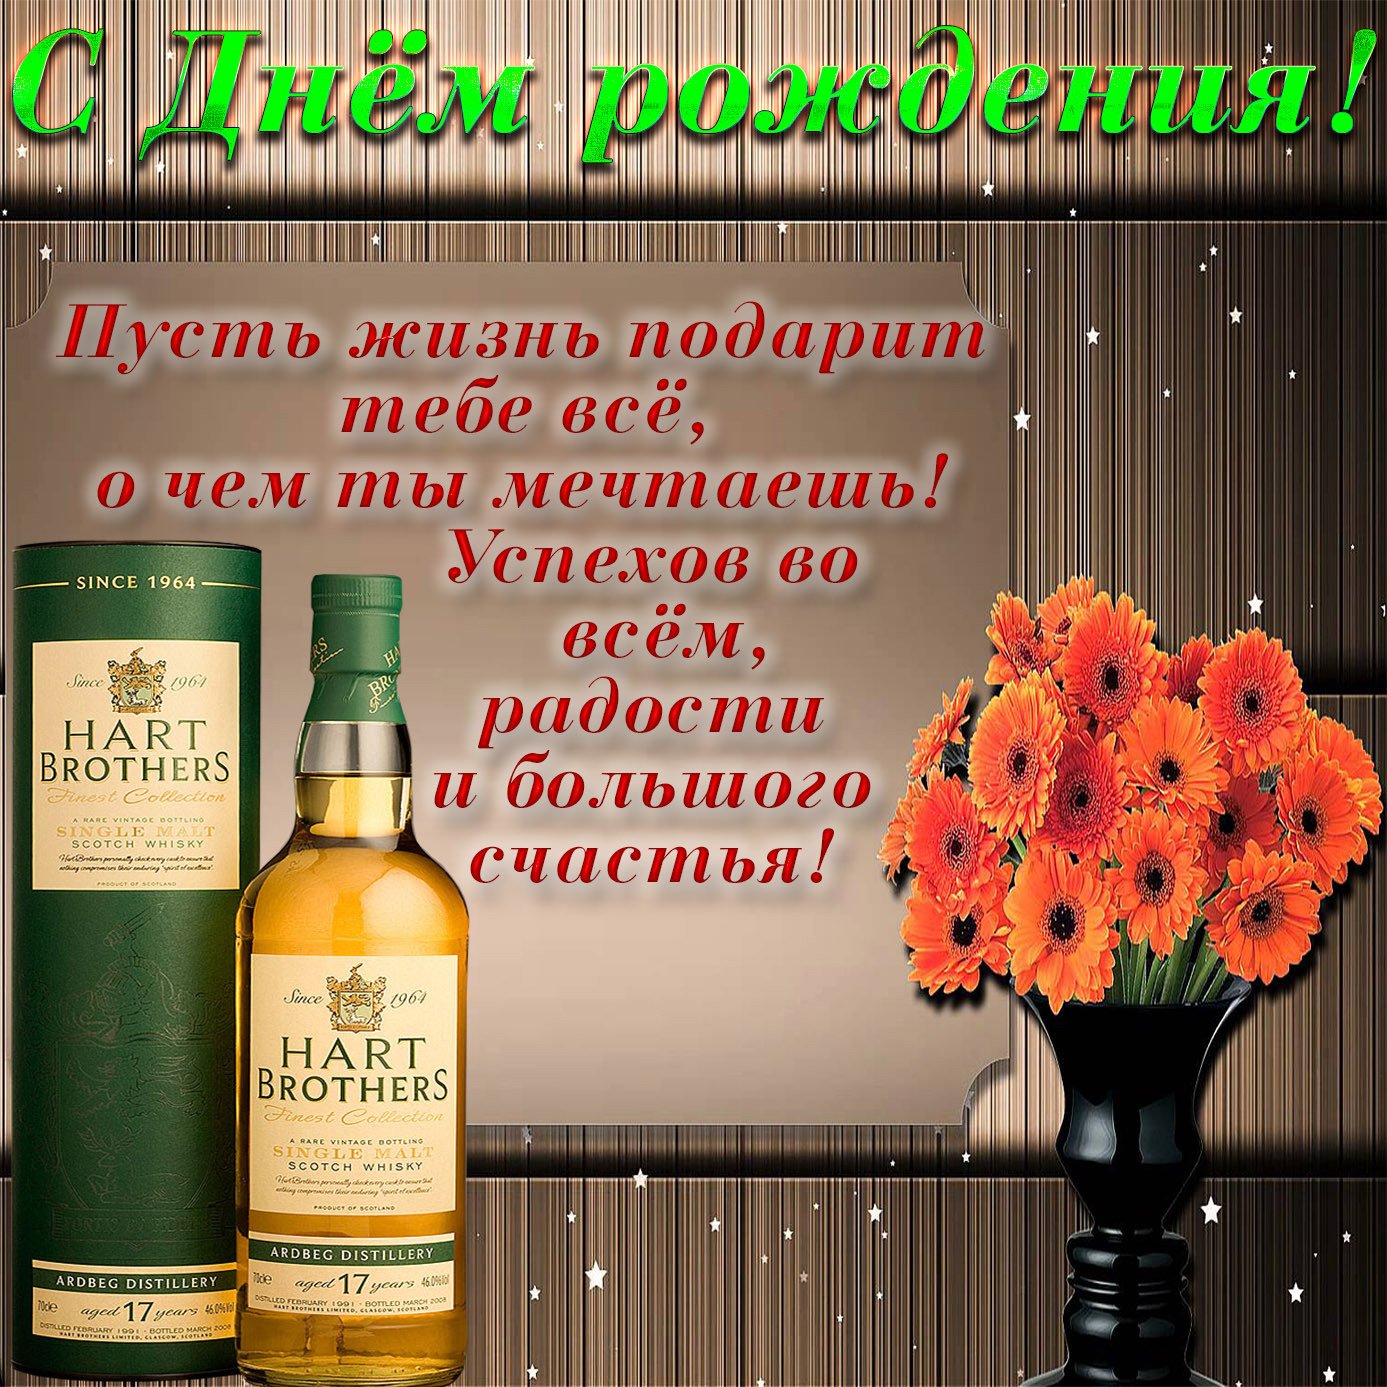 Поздравления с днем рождения мужчине в стихах, прозе, СМС - Новости на gkhyarovoe.ru